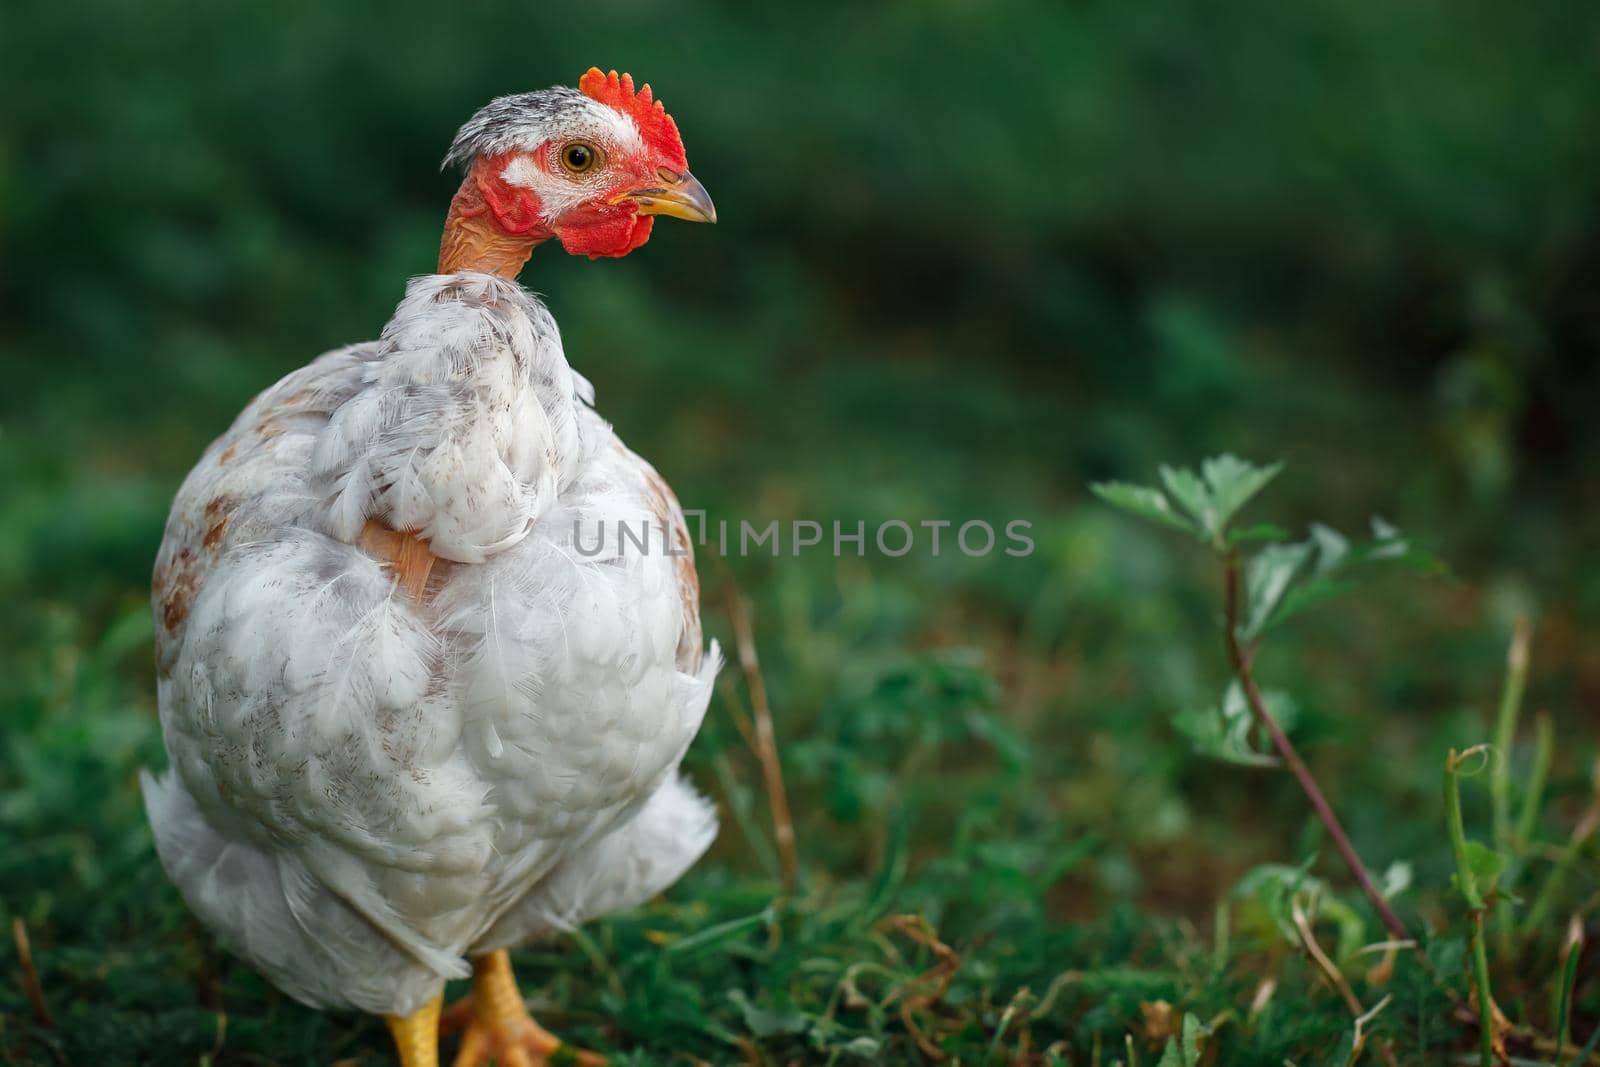 White chicken portrait on grass background by Lincikas